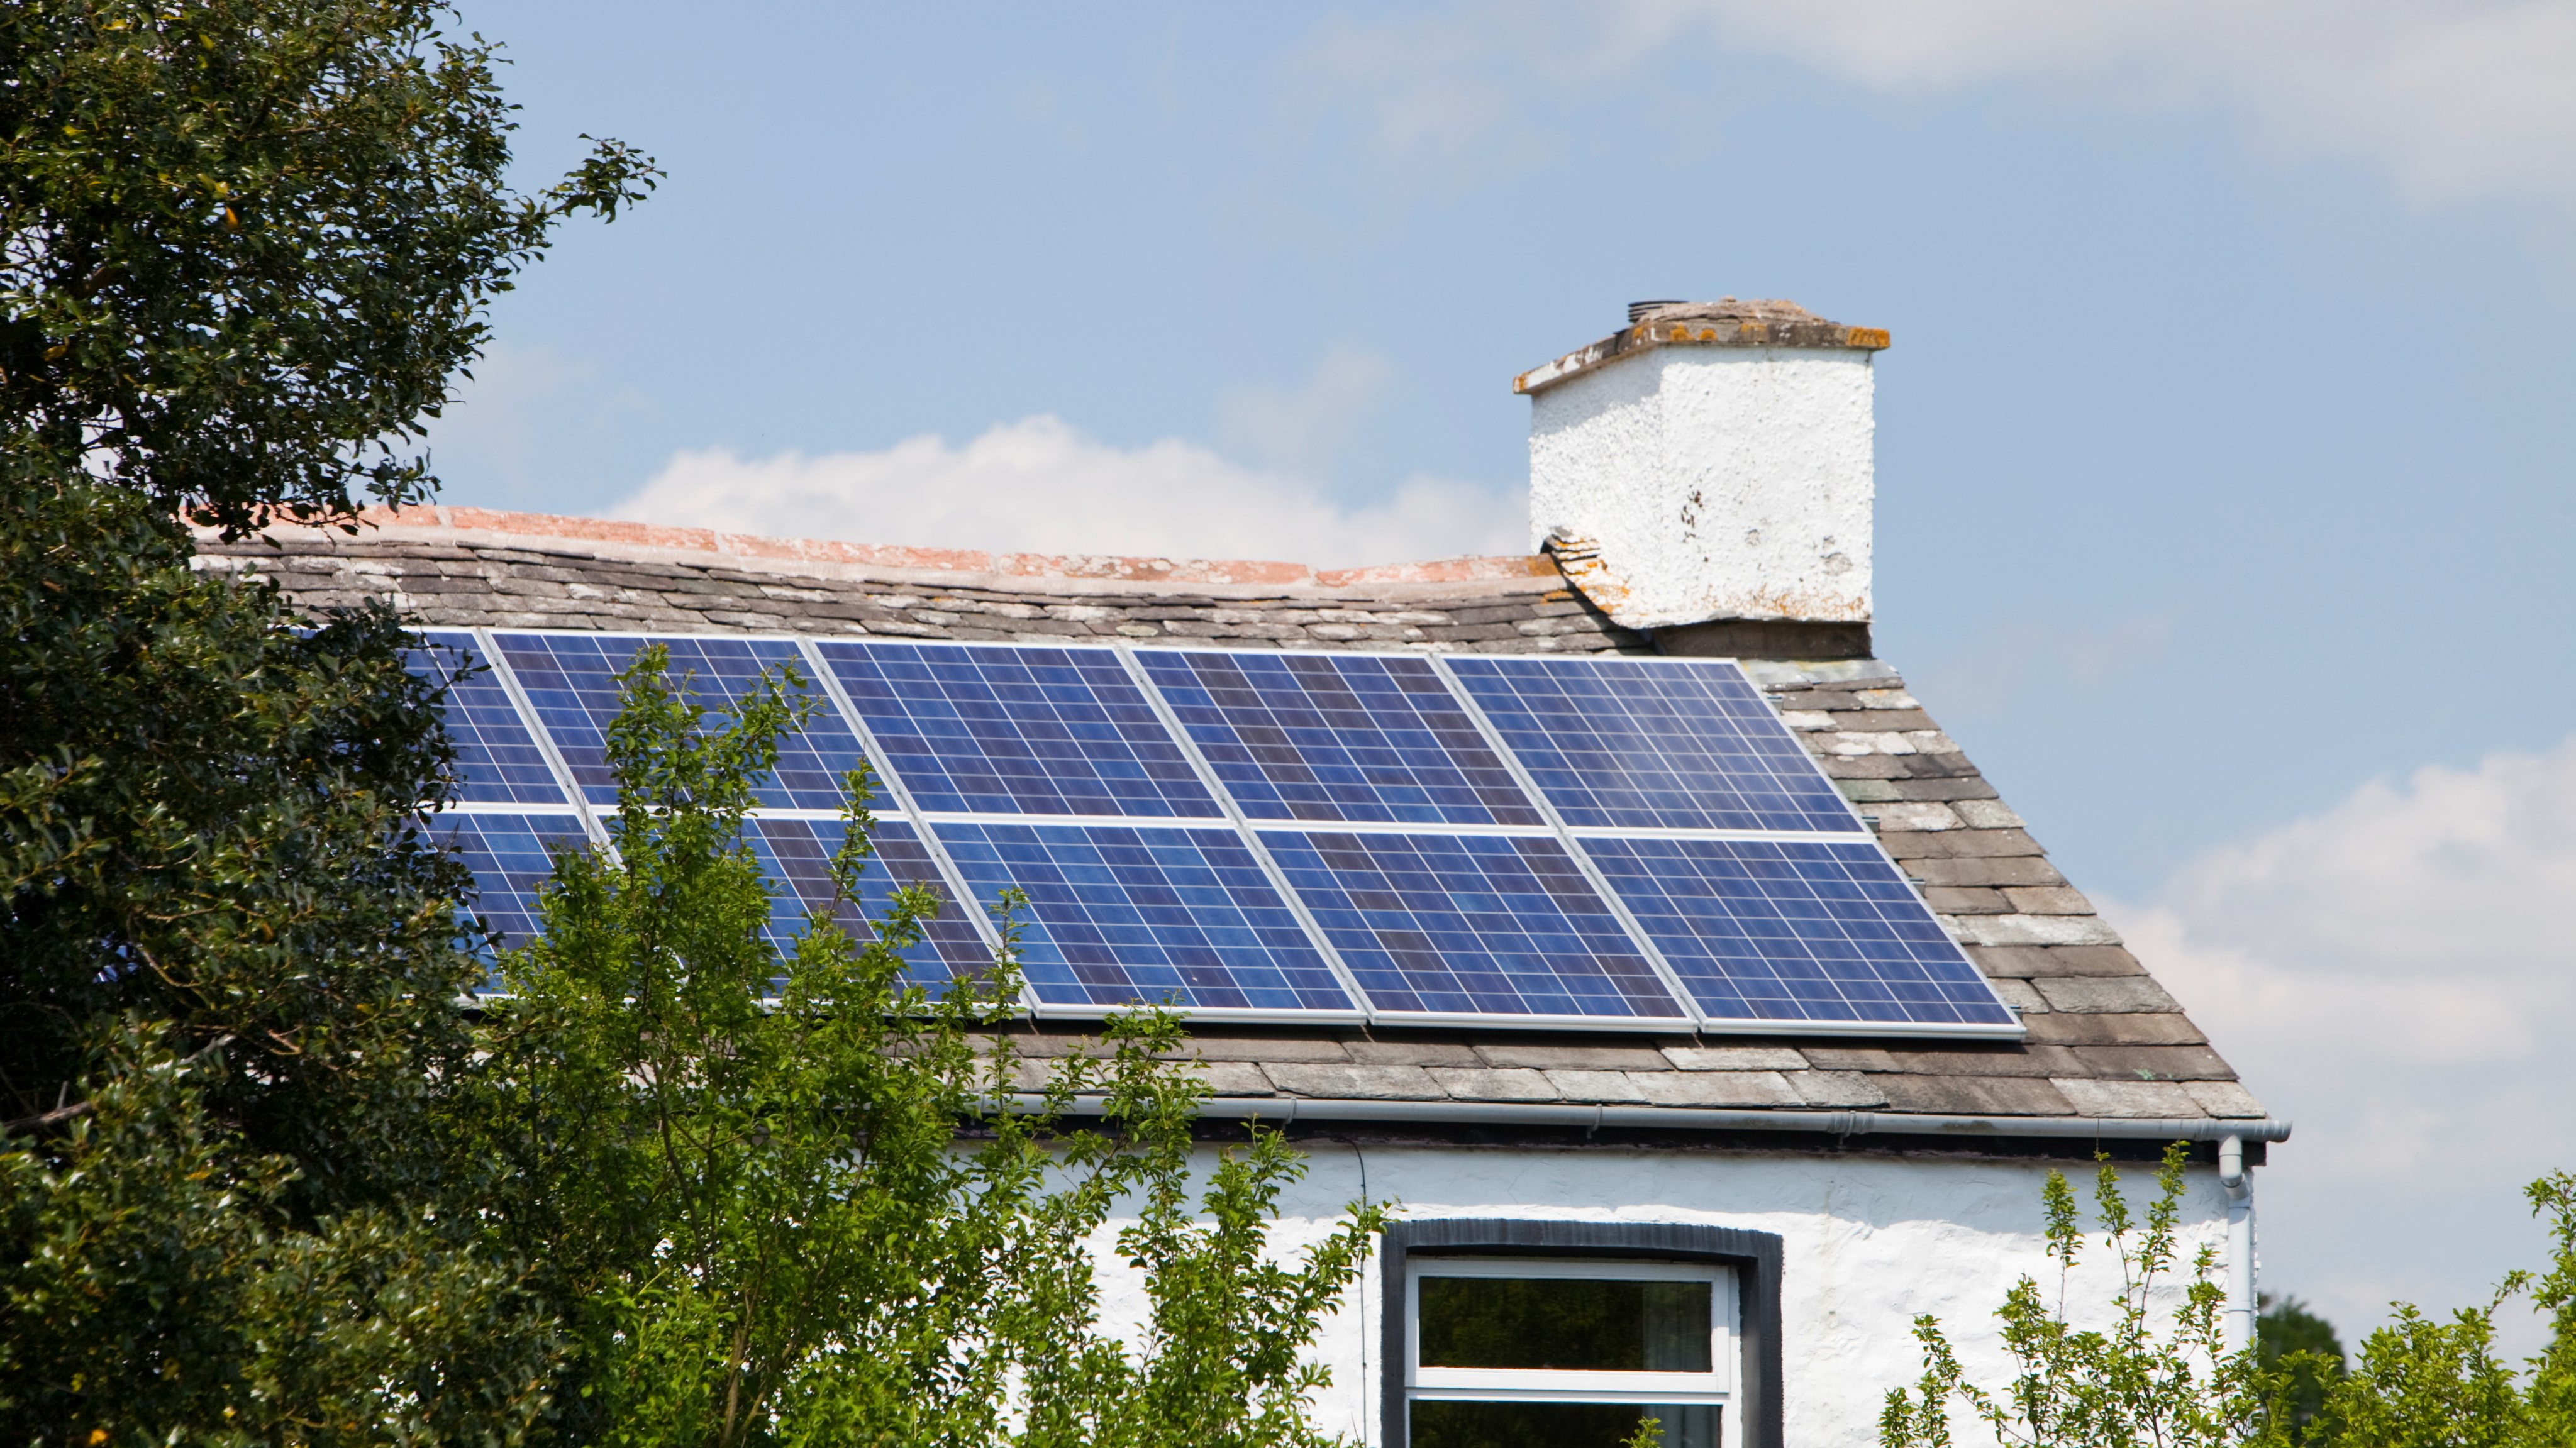 A 3 kilowatt solar voltaic panel array on an old house in Blawith, South Cumbria, UK.